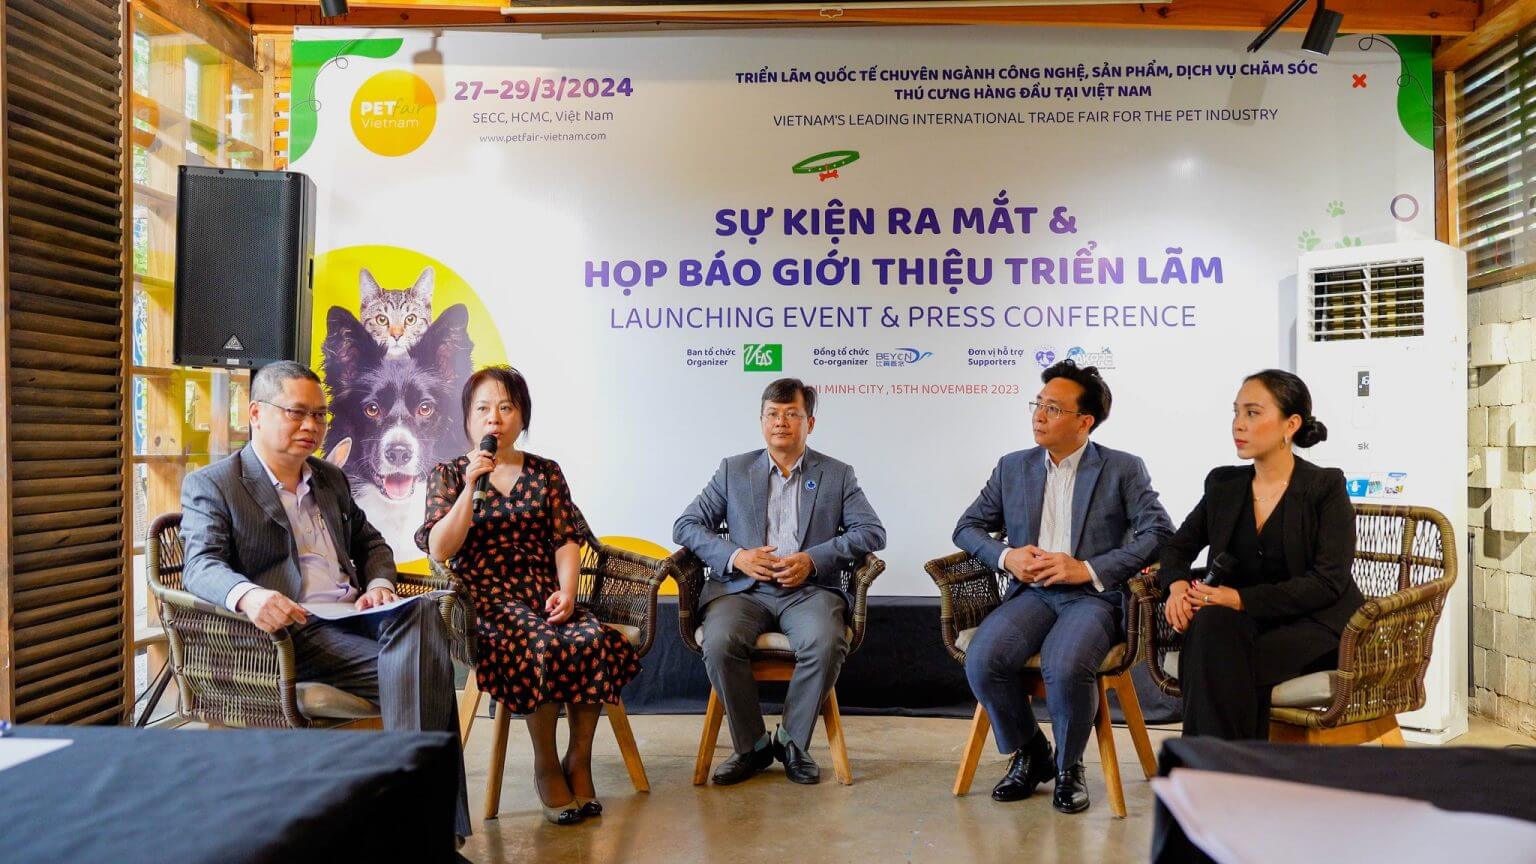 Press launch event of Pet Fair Vietnam 2024 exhibition